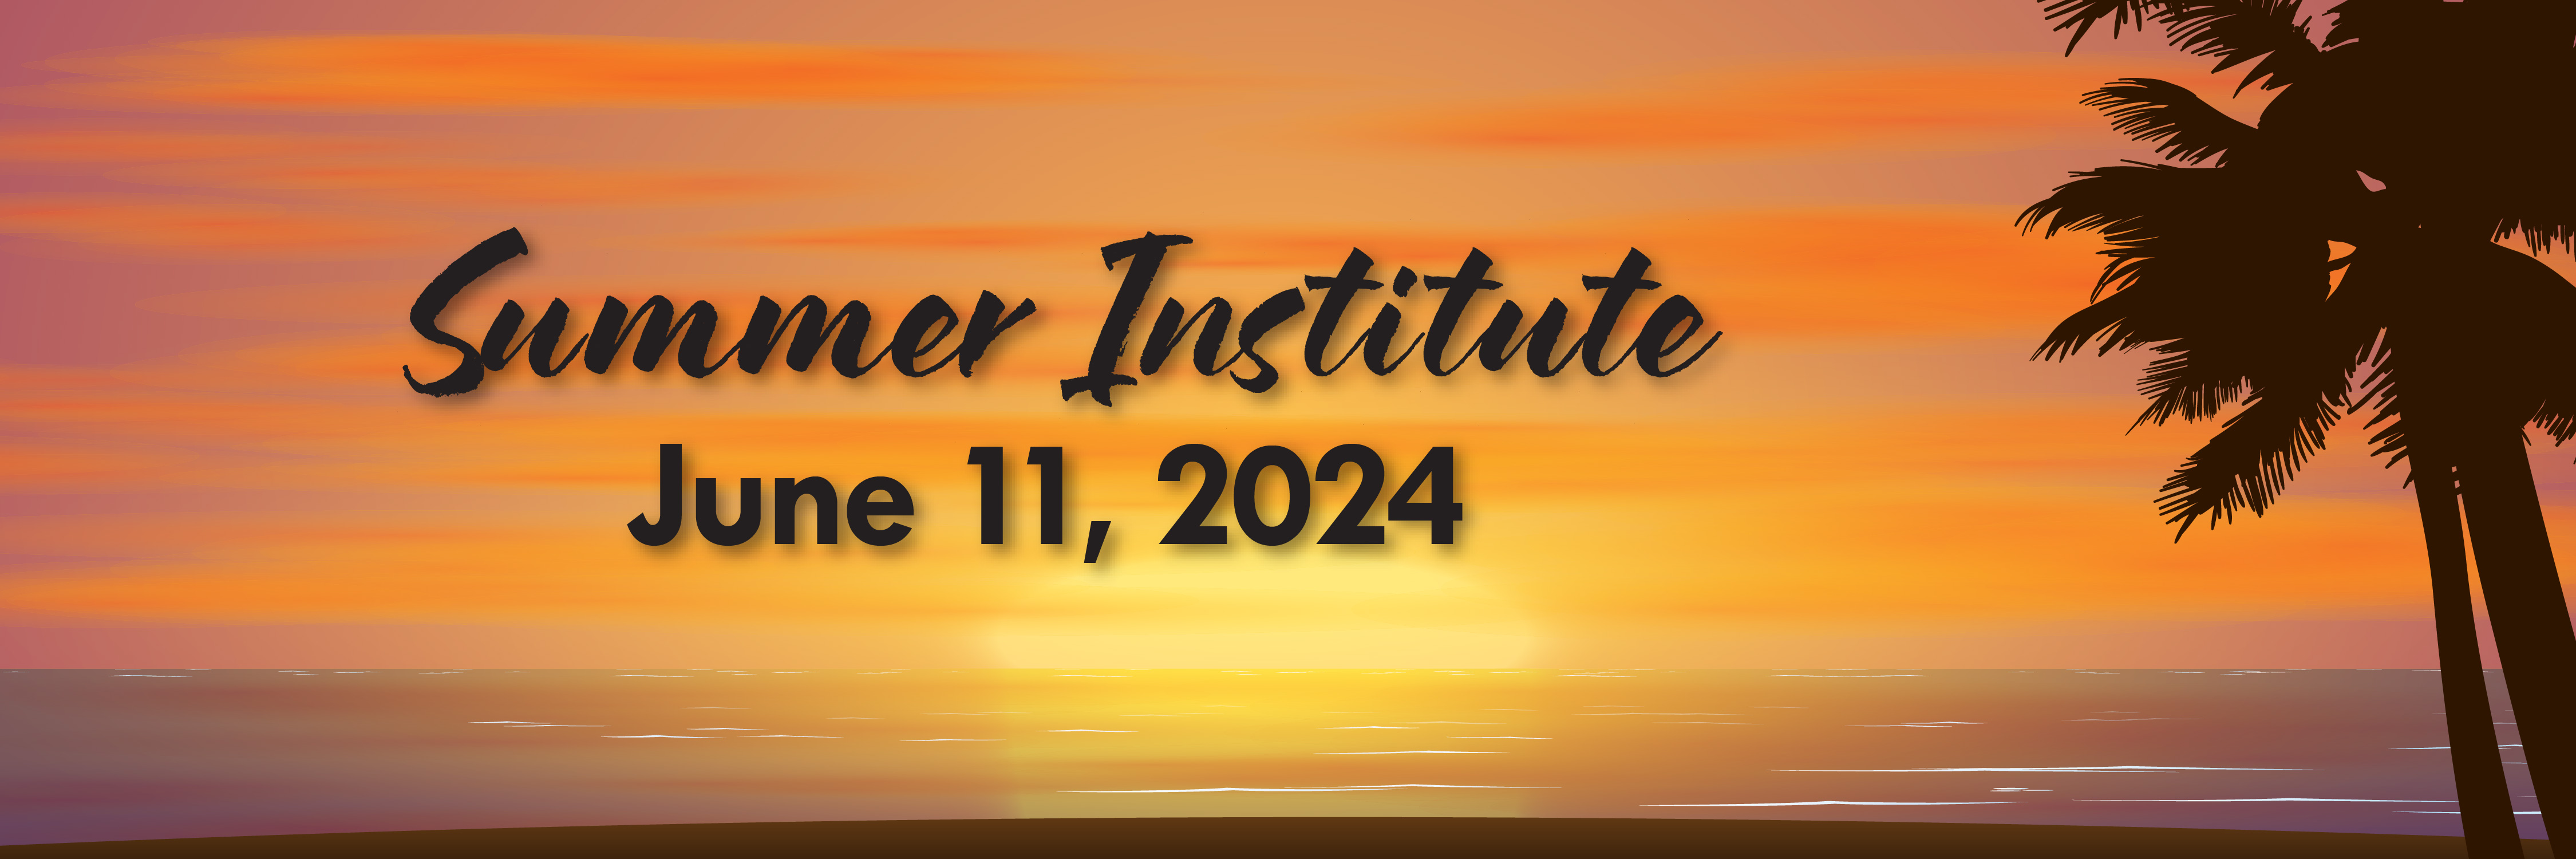 Summer Institute June11, 2024